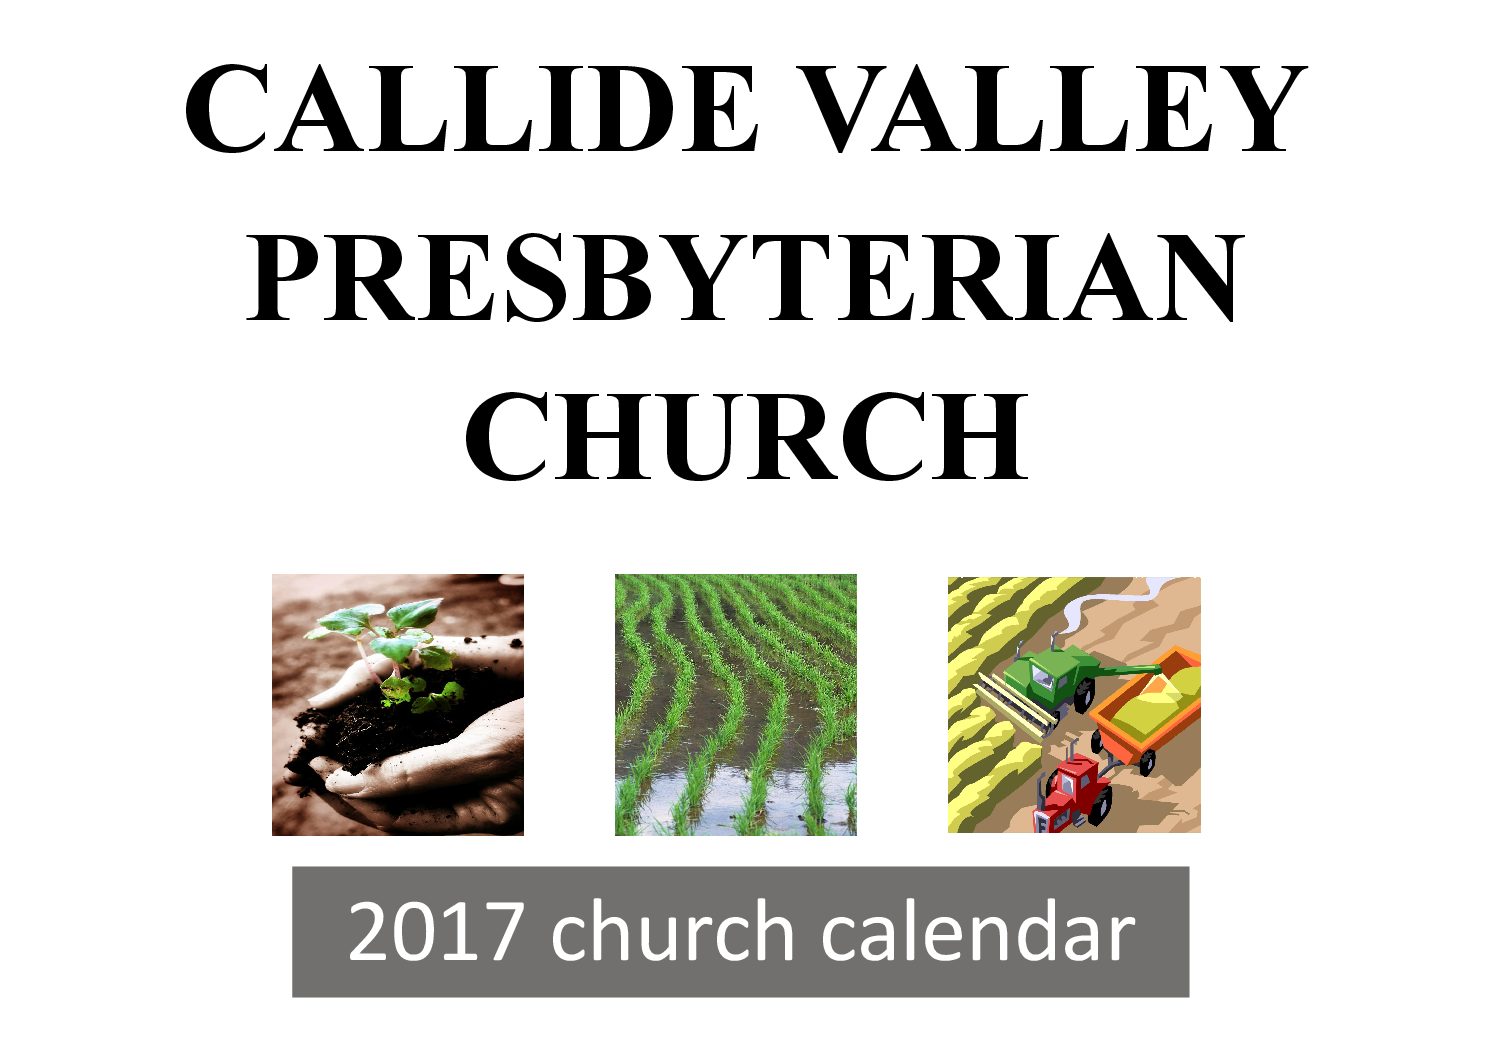 Callide Valley Presbyterian Church Calendar 2017